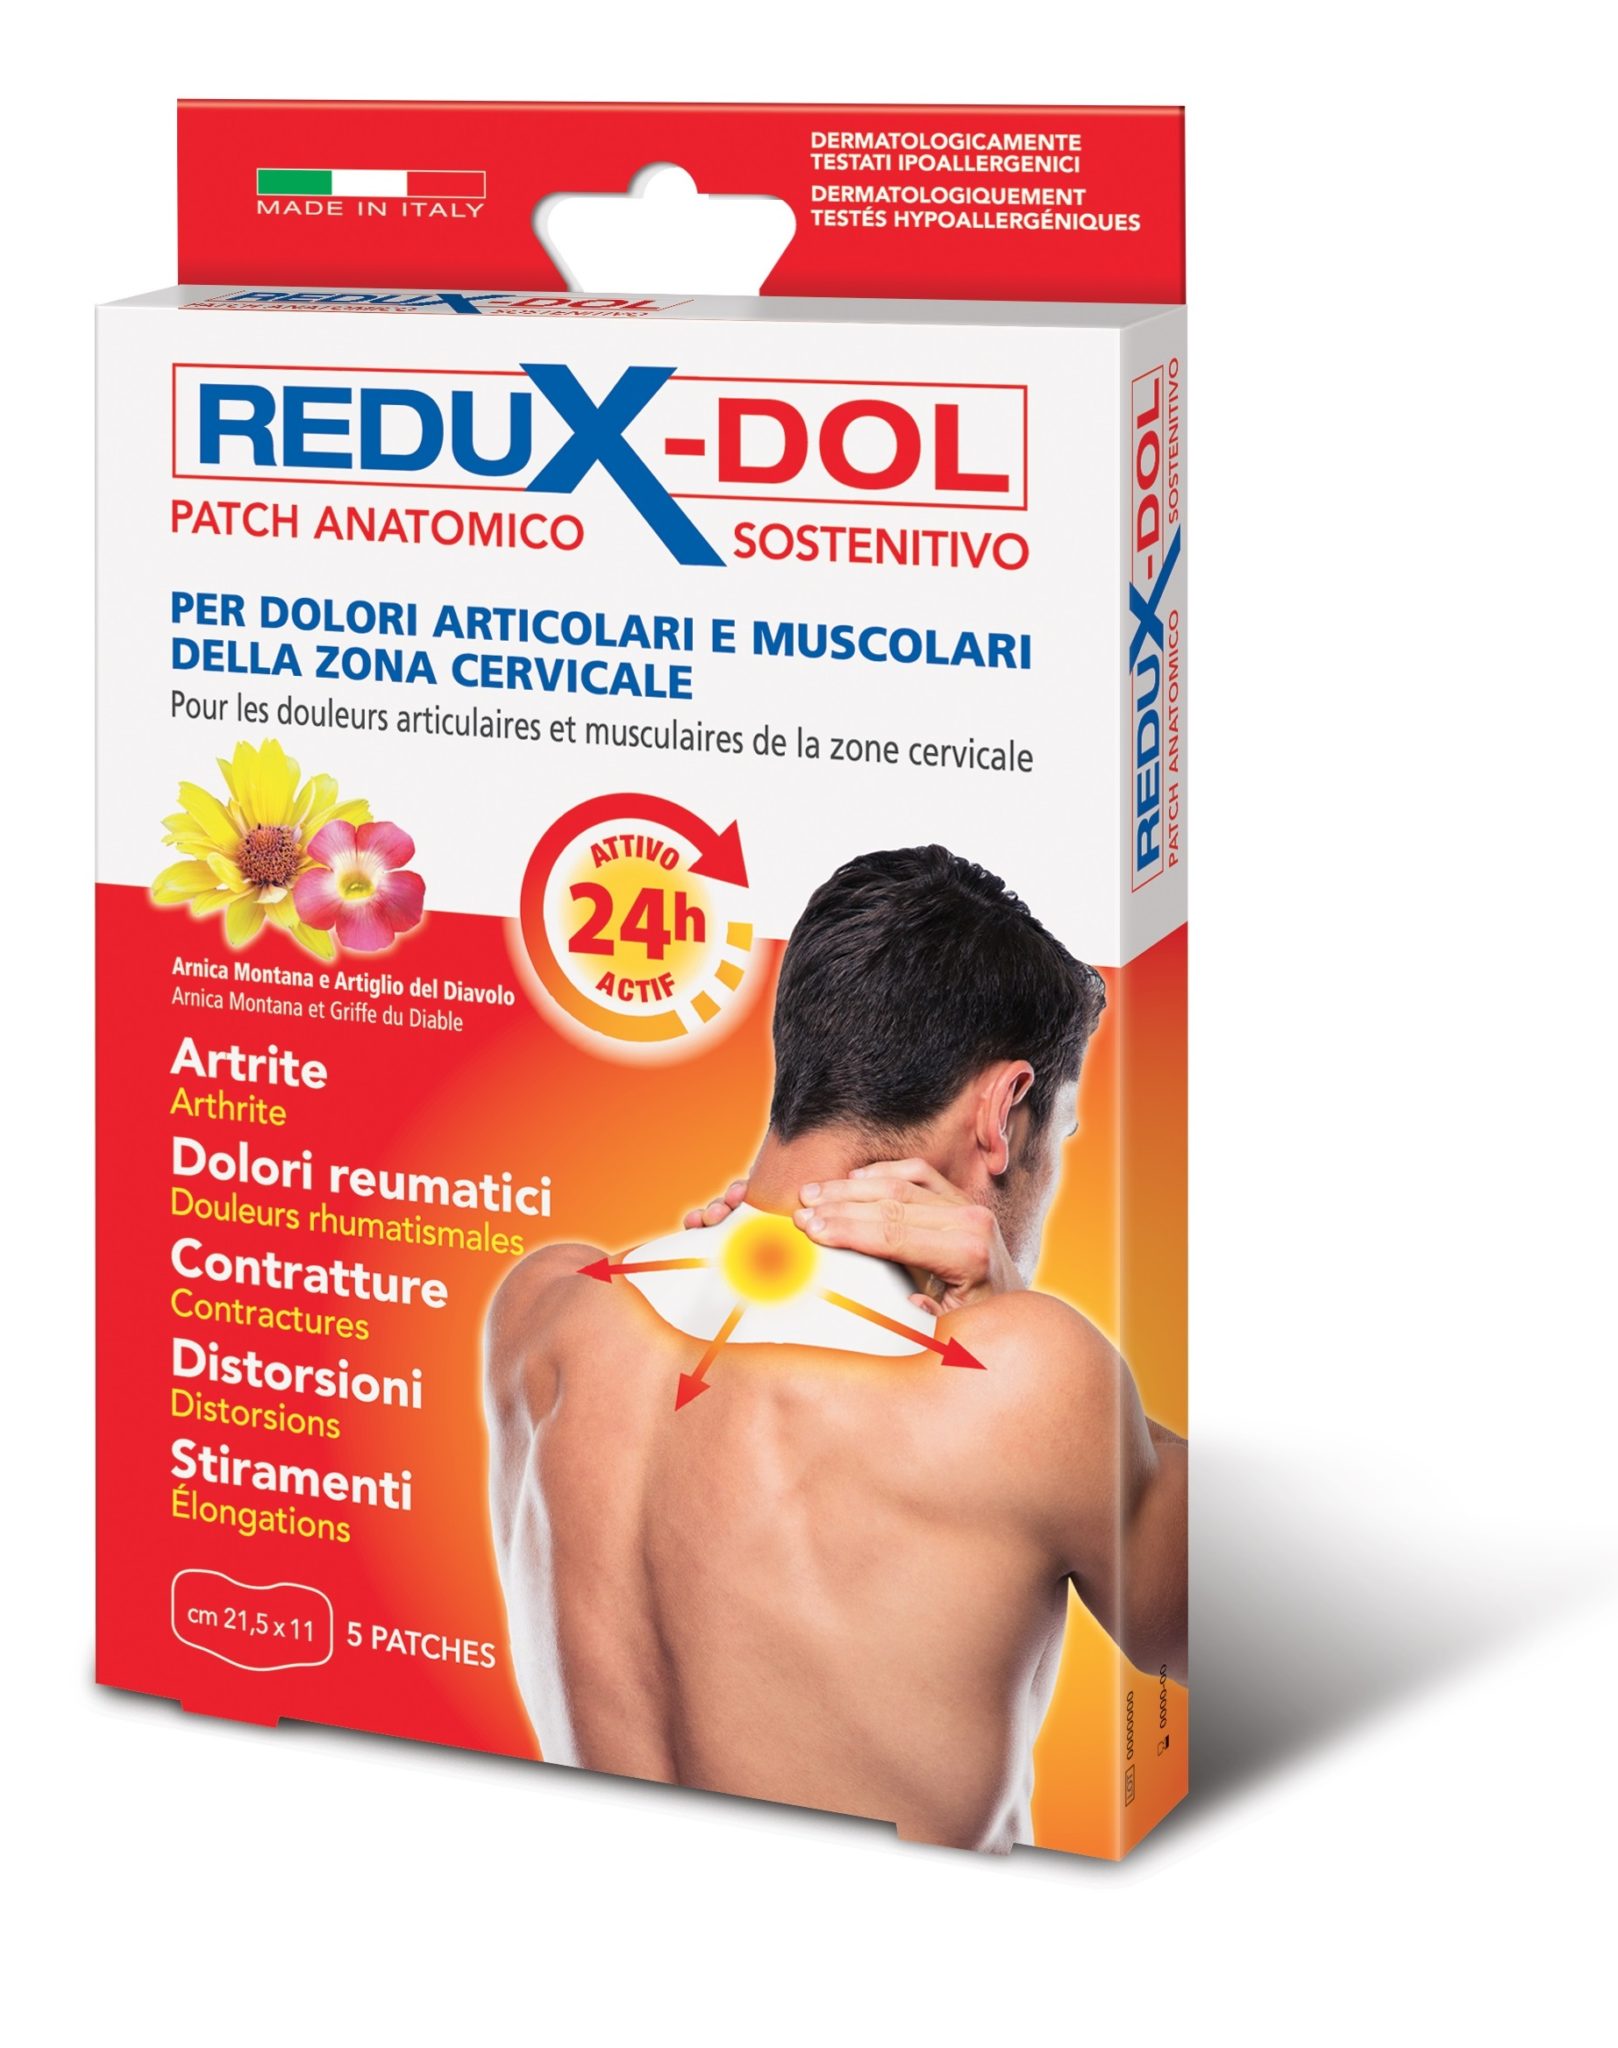 Redux-Dol Patch Anatomico Sostenitivo